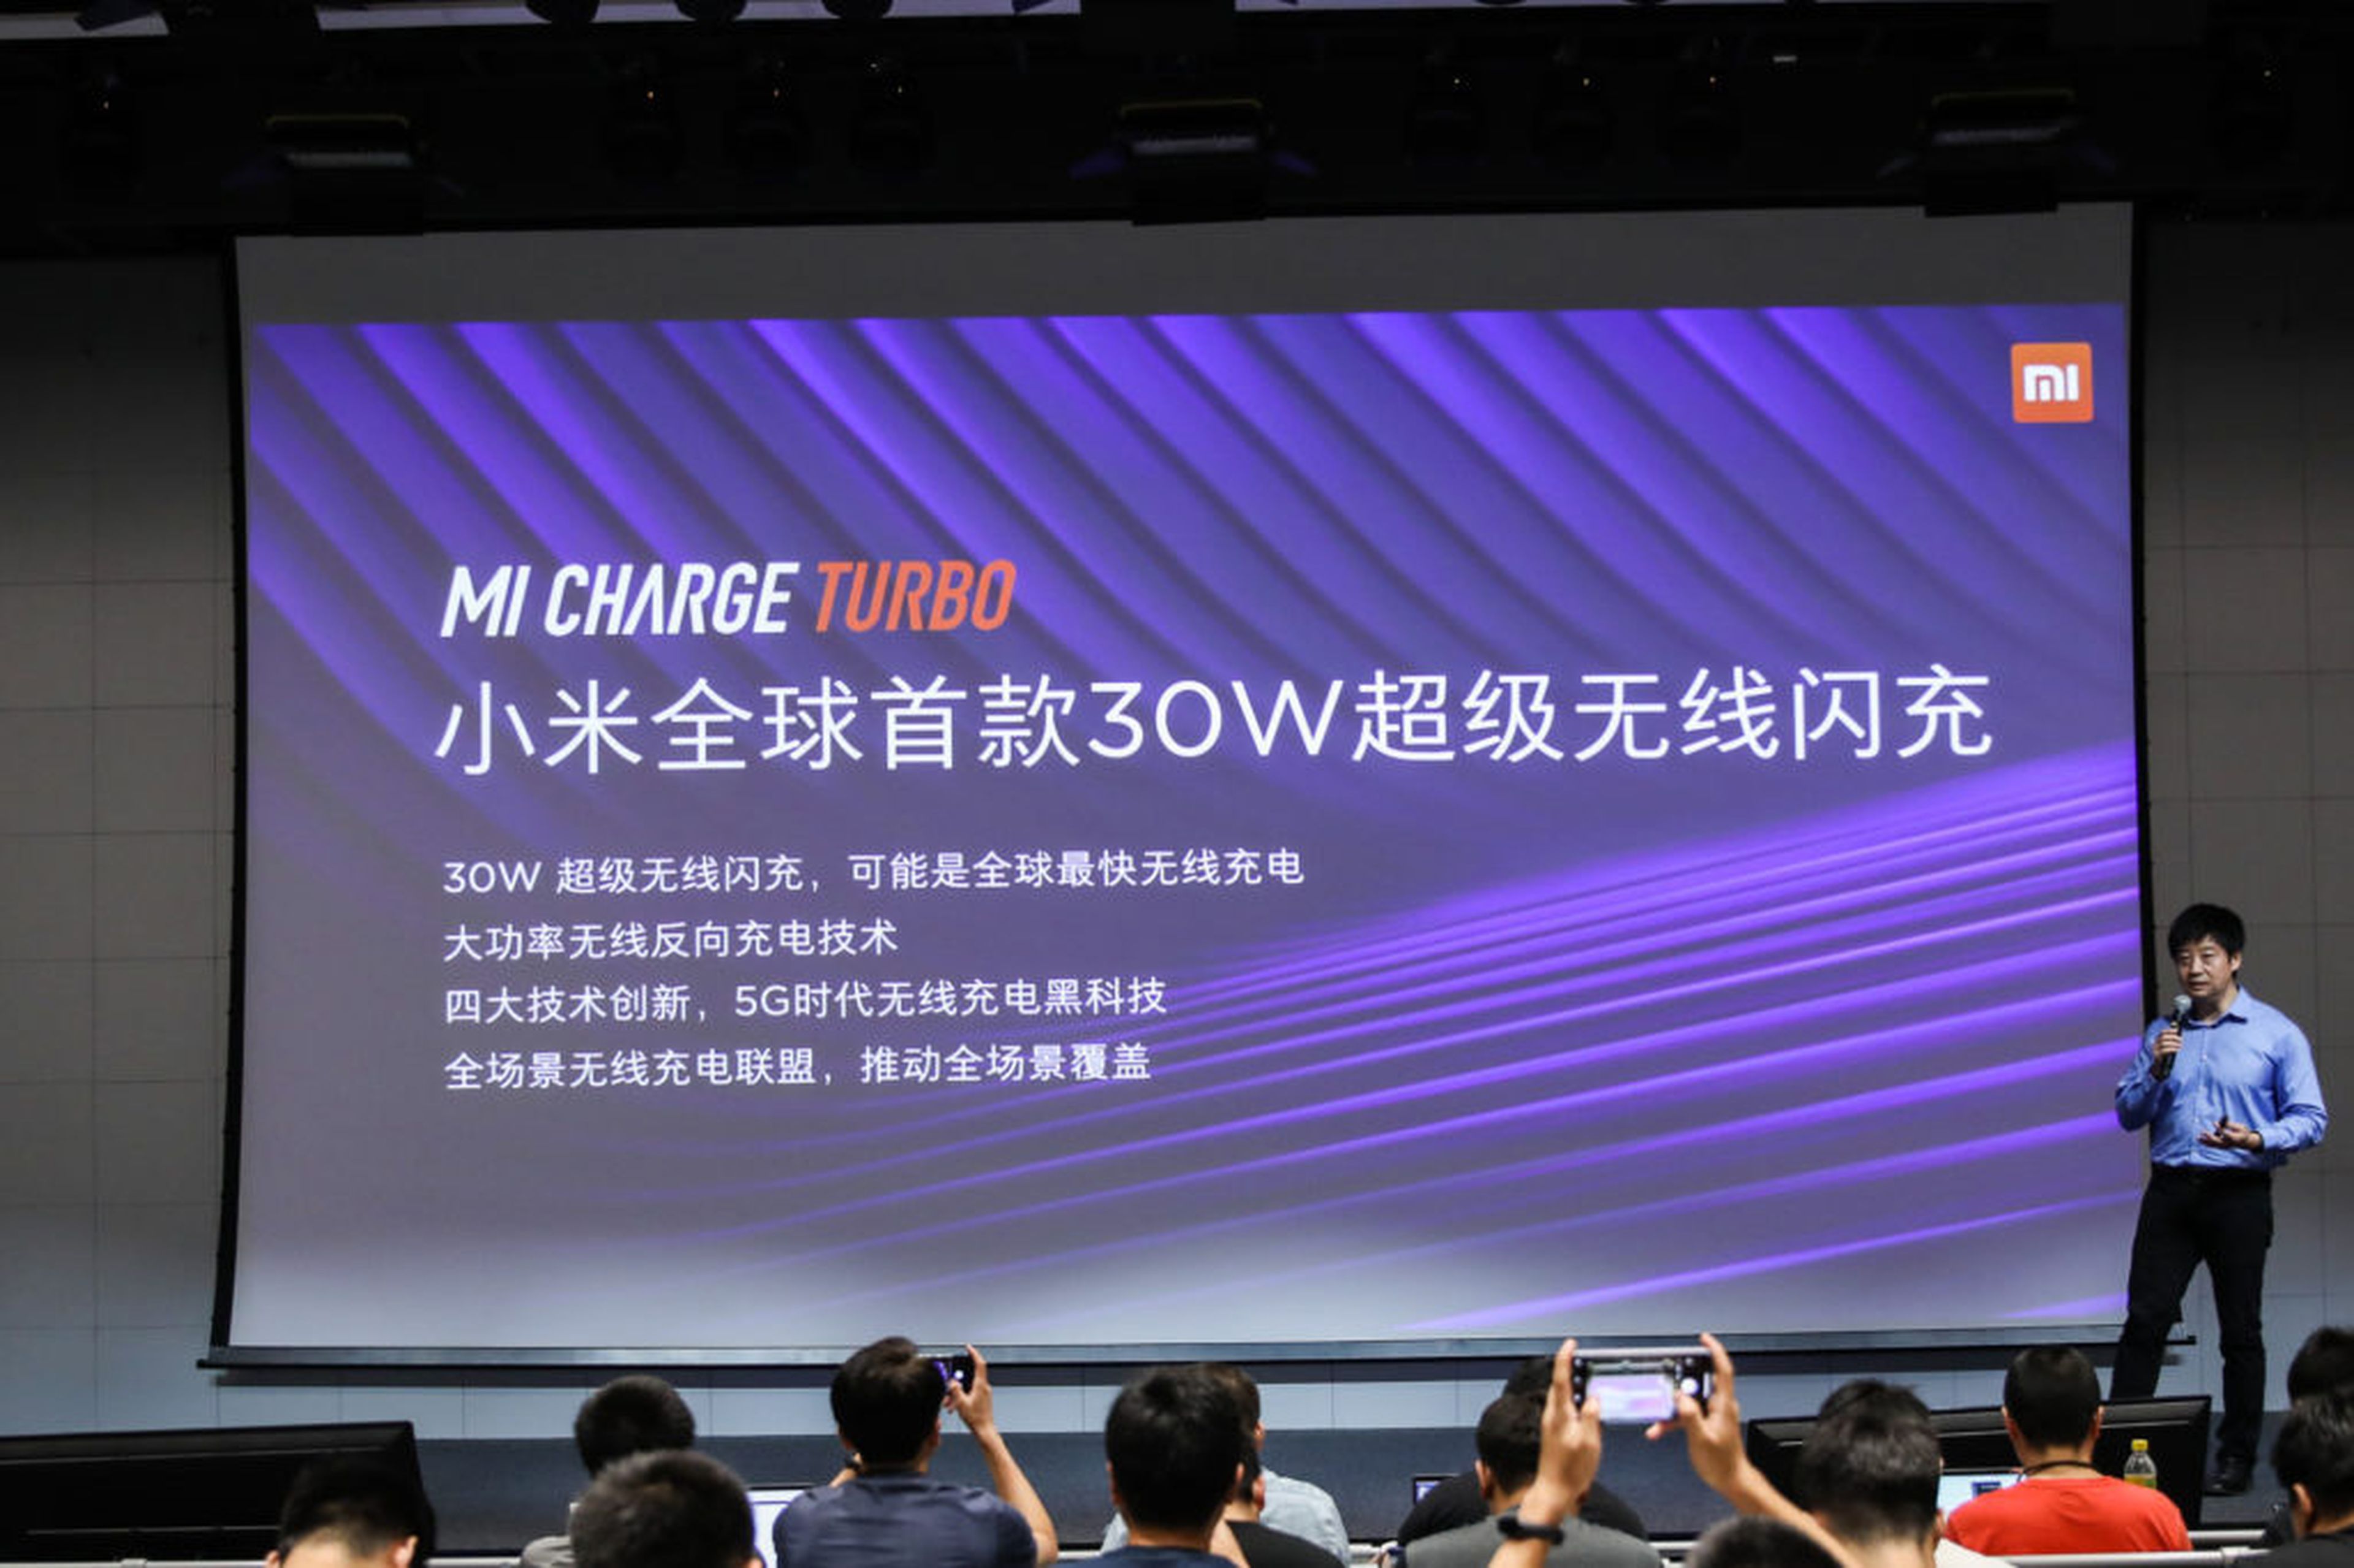 Presentación de la nueva tecnología de carga inalámbrica de Xiaomi.